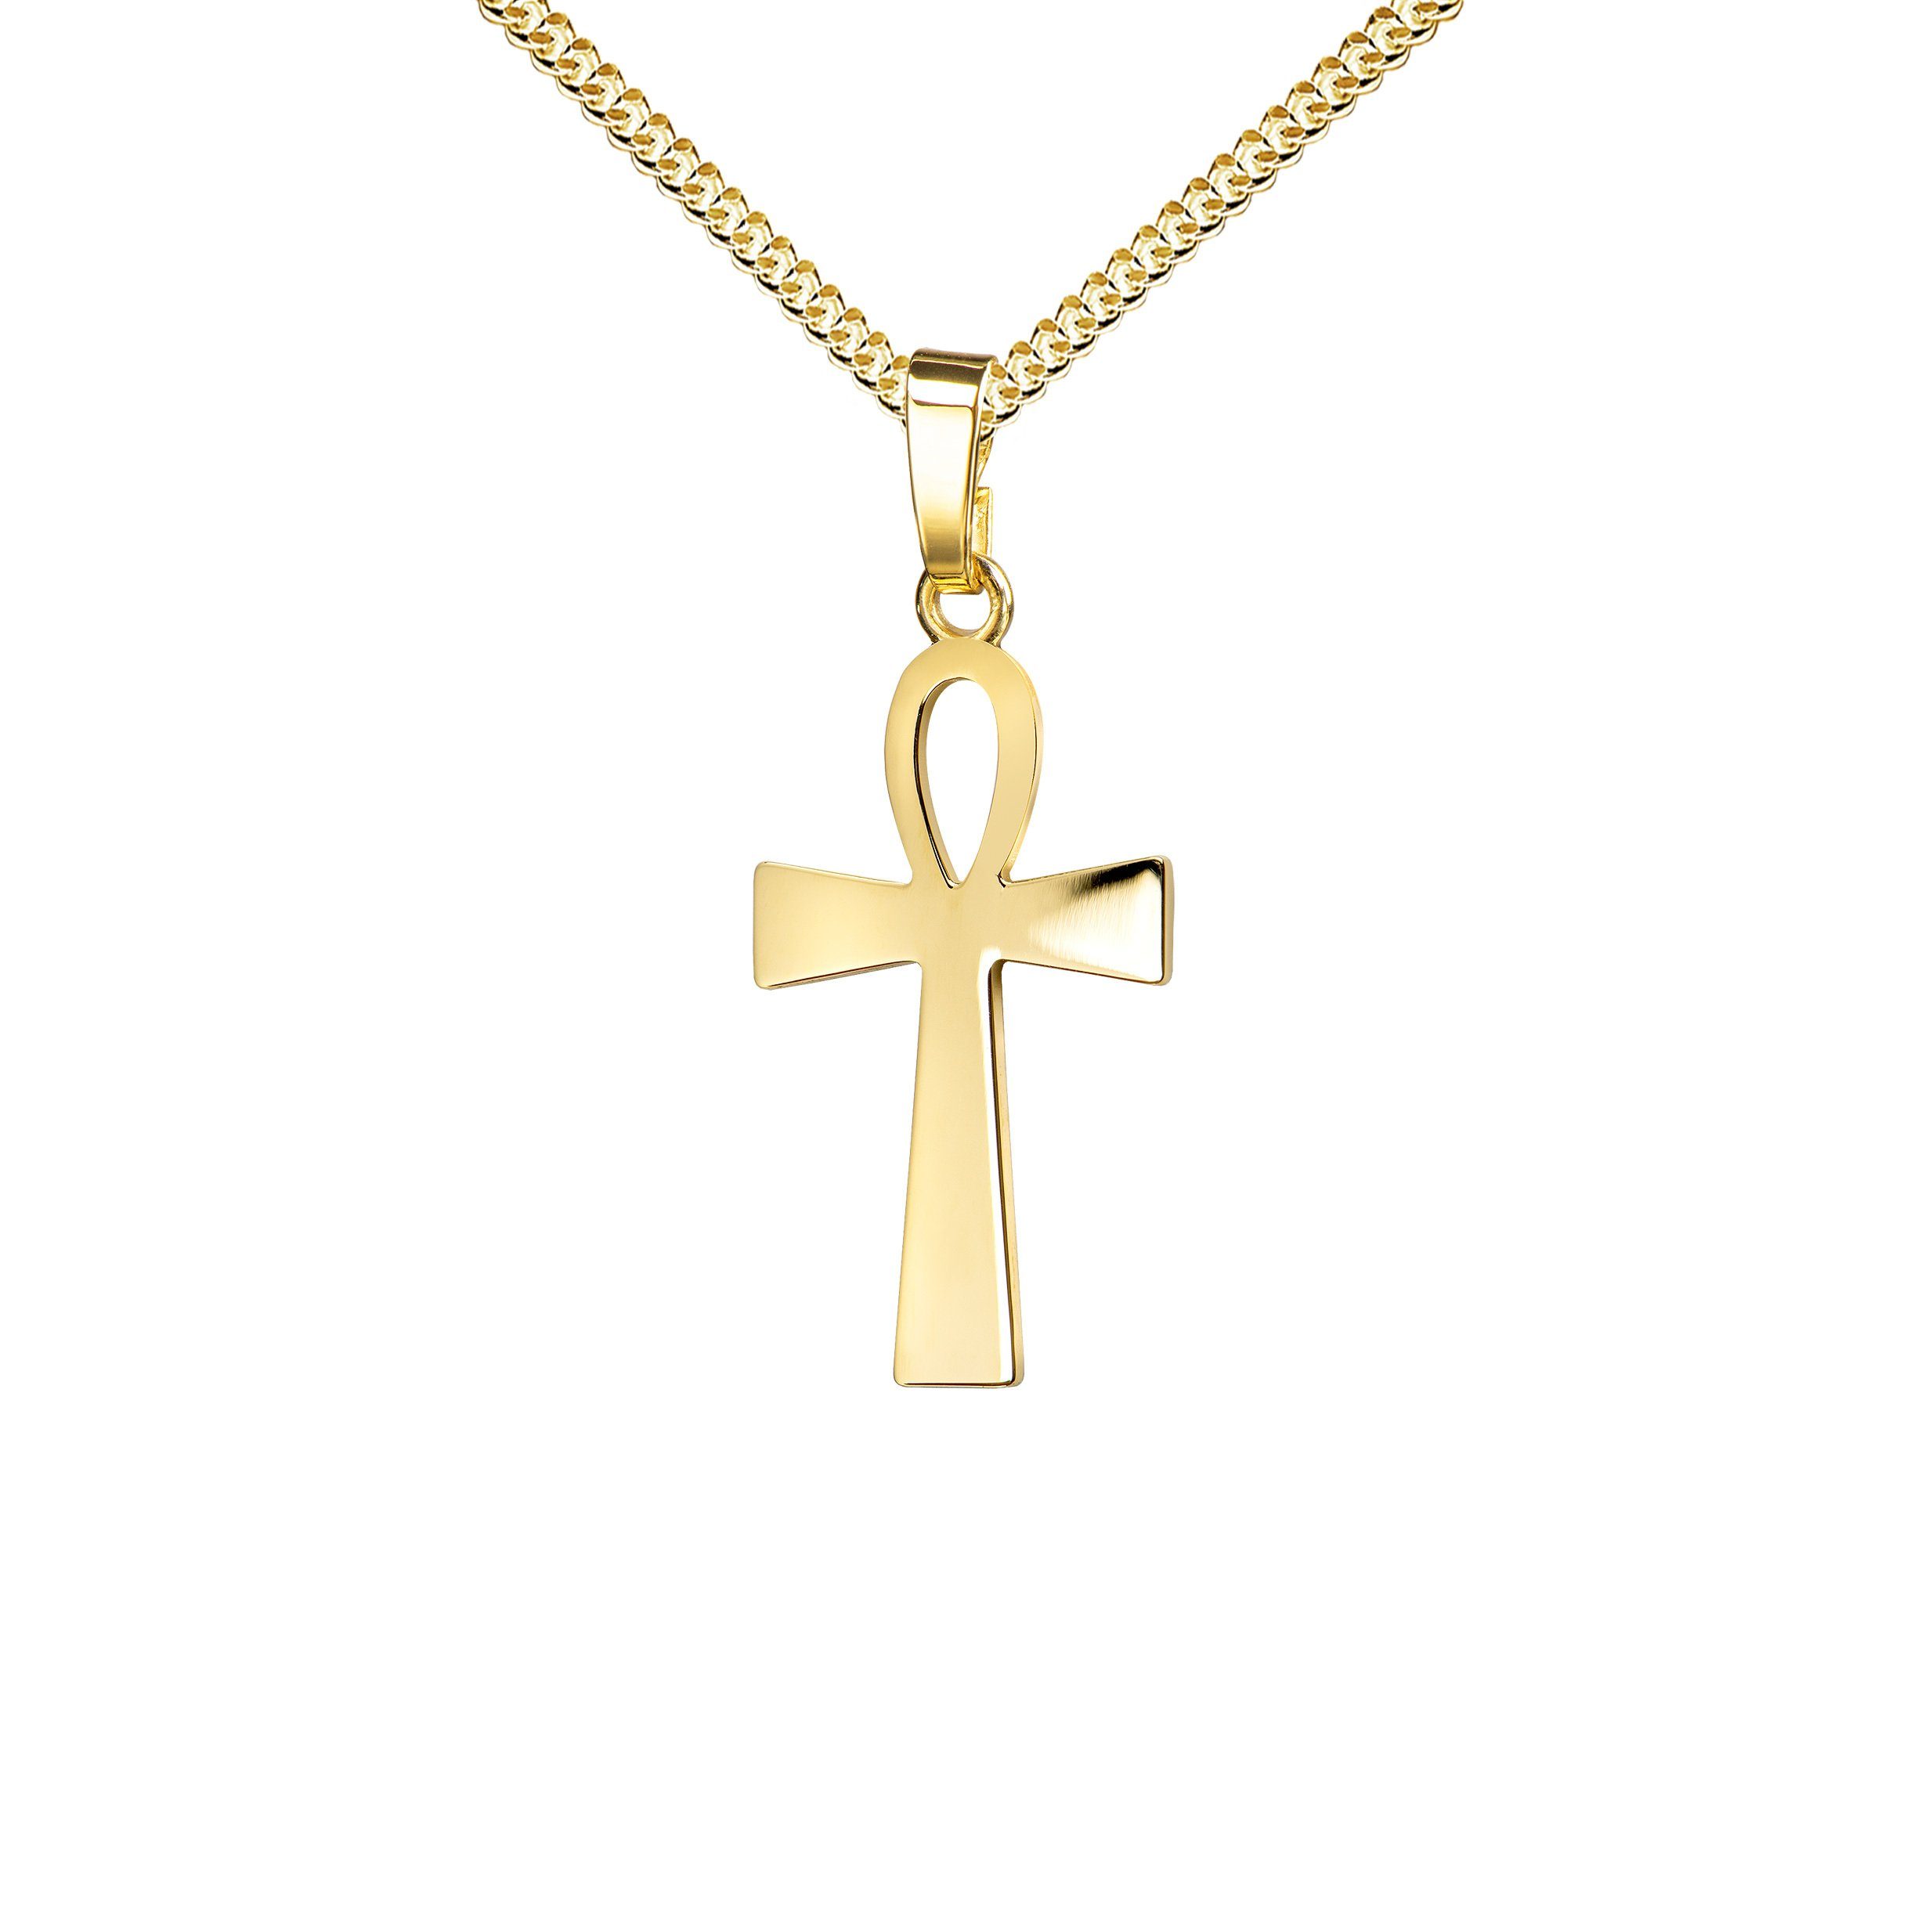 JEVELION Kreuzkette ägyptisches Kreuz 585 Gold - Made in Germany (Goldkreuz, für Damen und Herren), Mit Kette vergoldet- Länge wählbar 36 - 70 cm oder ohne Kette.